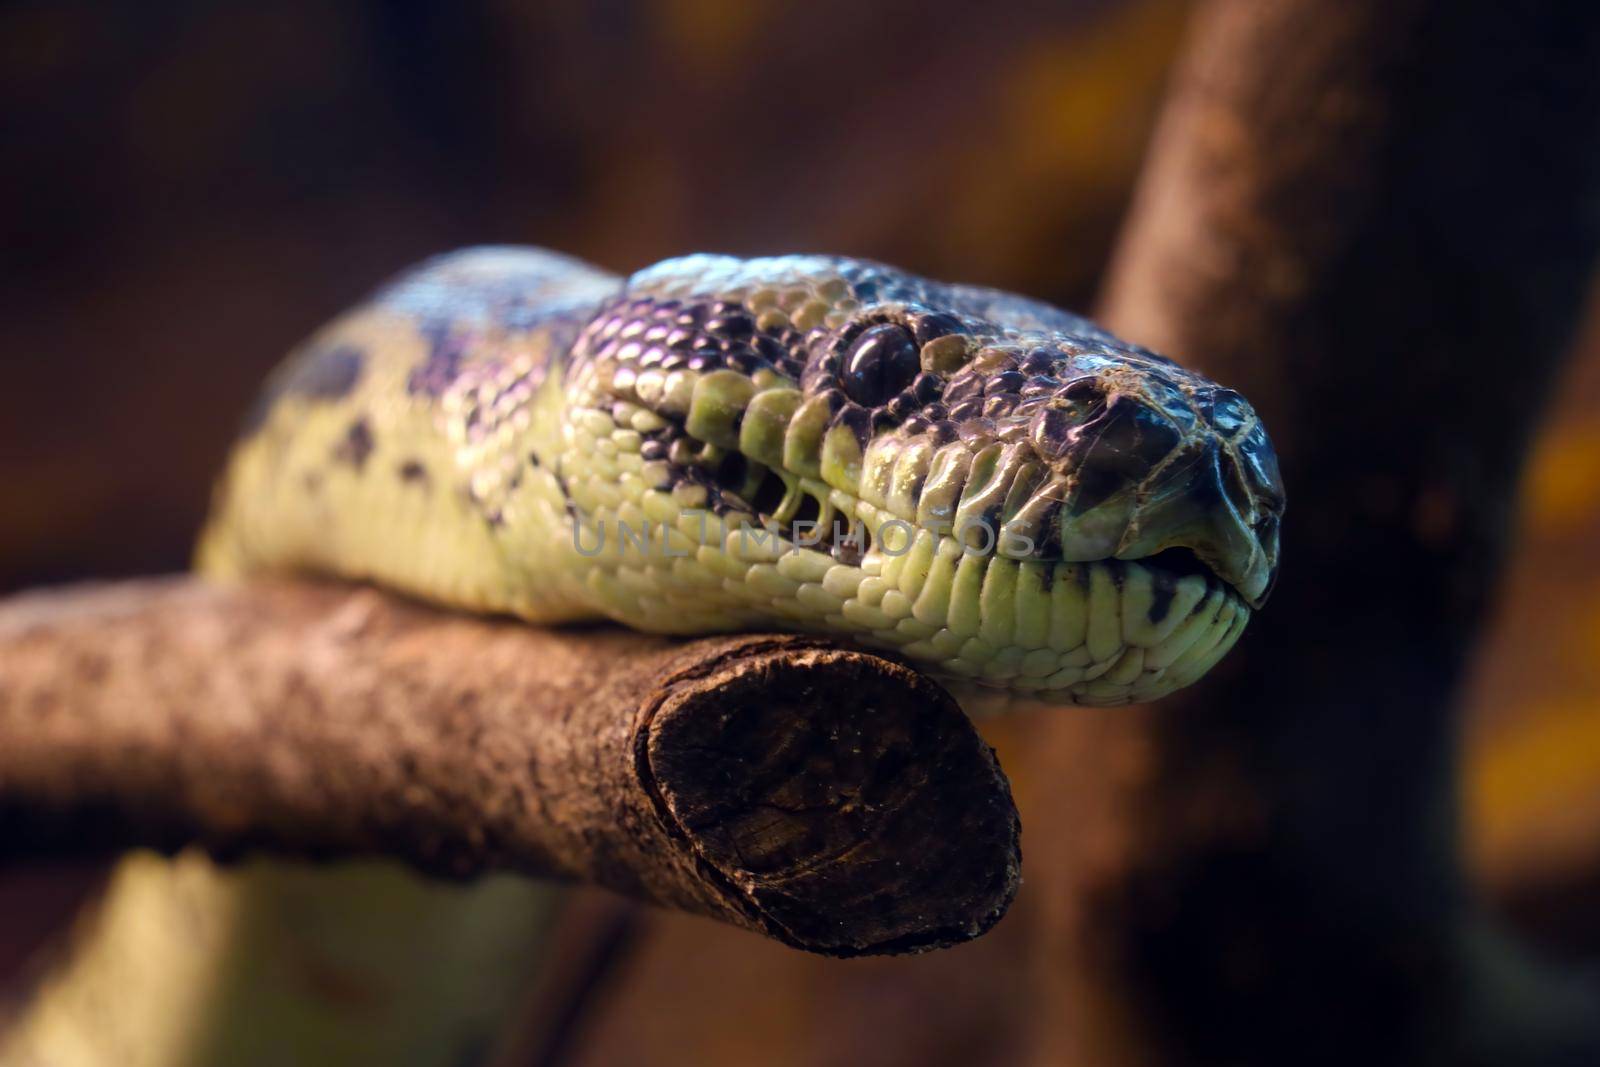 Close-up on a snake on a tree branch